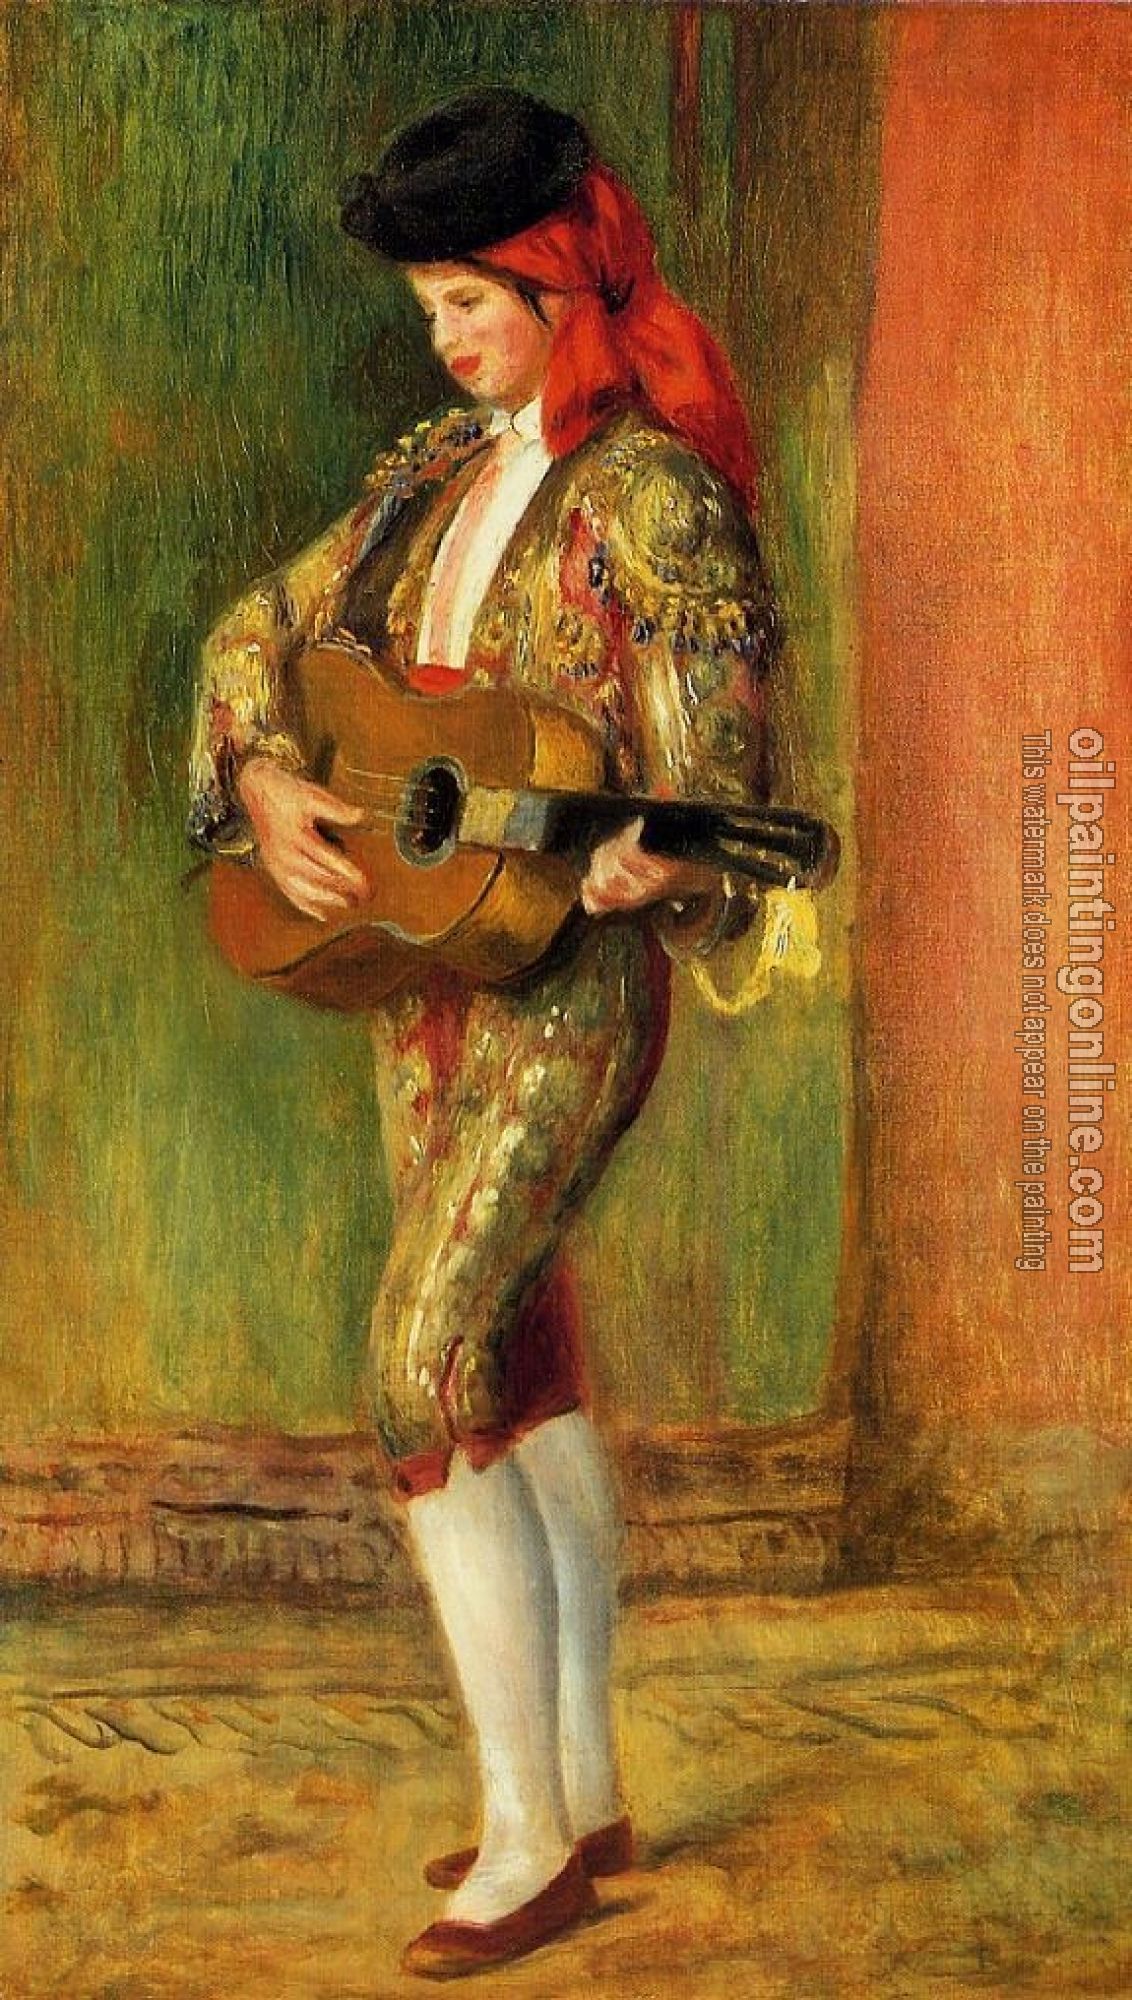 Renoir, Pierre Auguste - Young Guitarist Standing